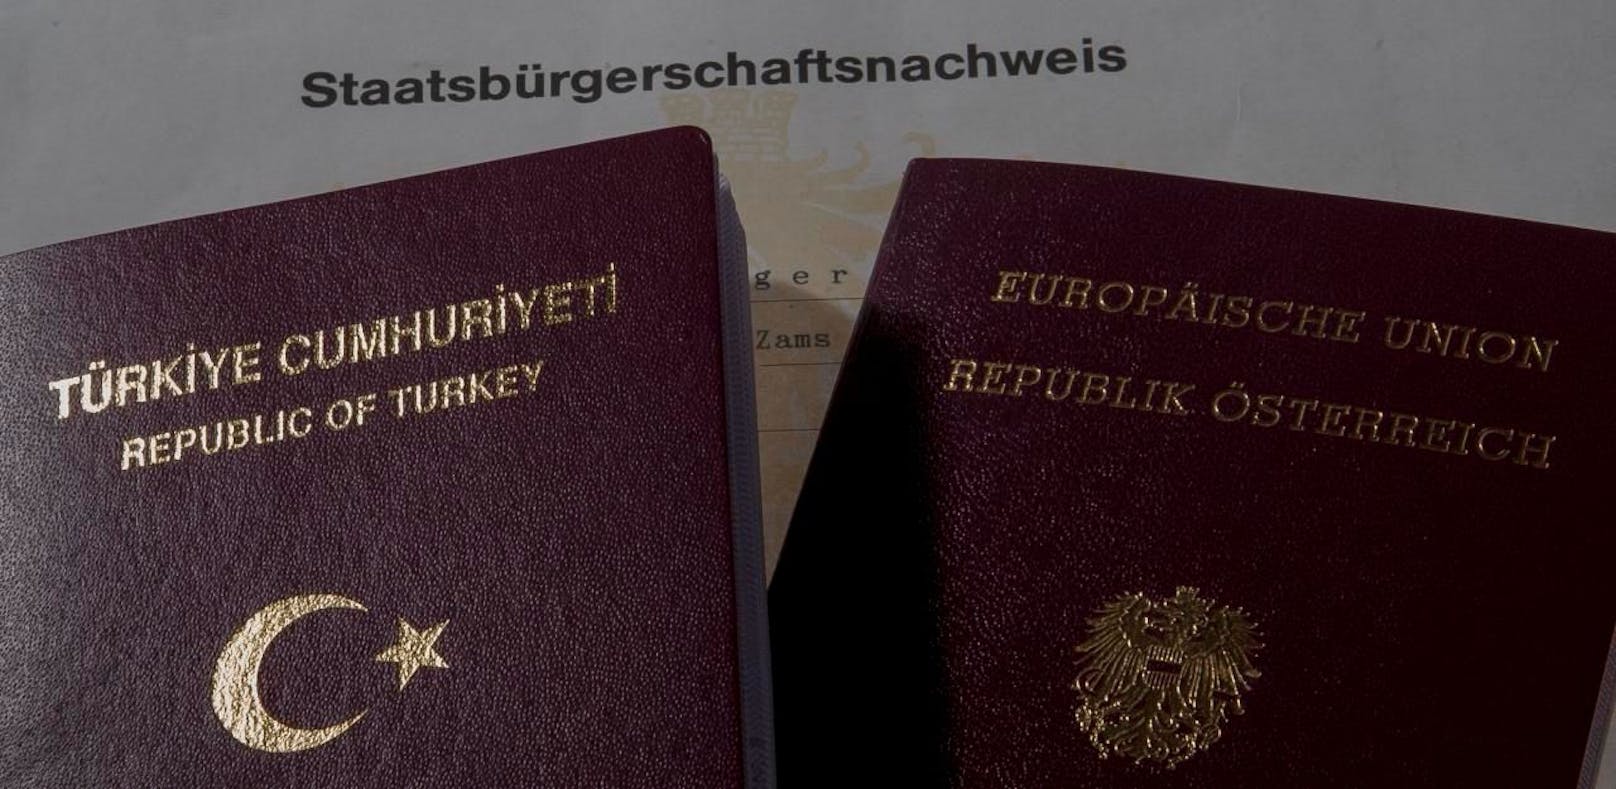 Wer illegal die türkische Staatsbürgerschaft besitzt, dem droht die Aberkennung des österreichischen Passes